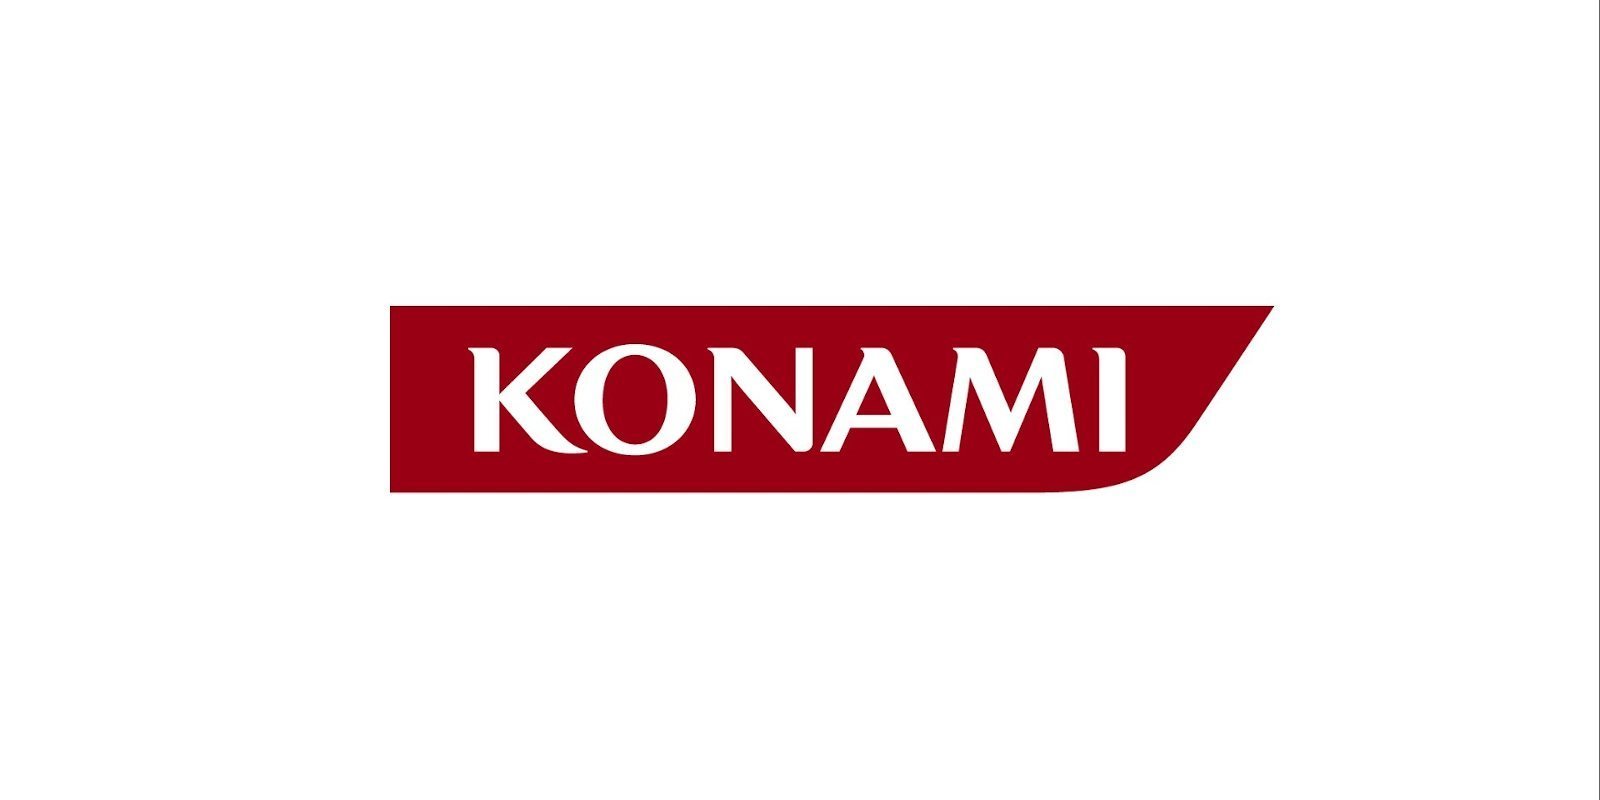 Konami busca publicar títulos occidentales para el público occidental